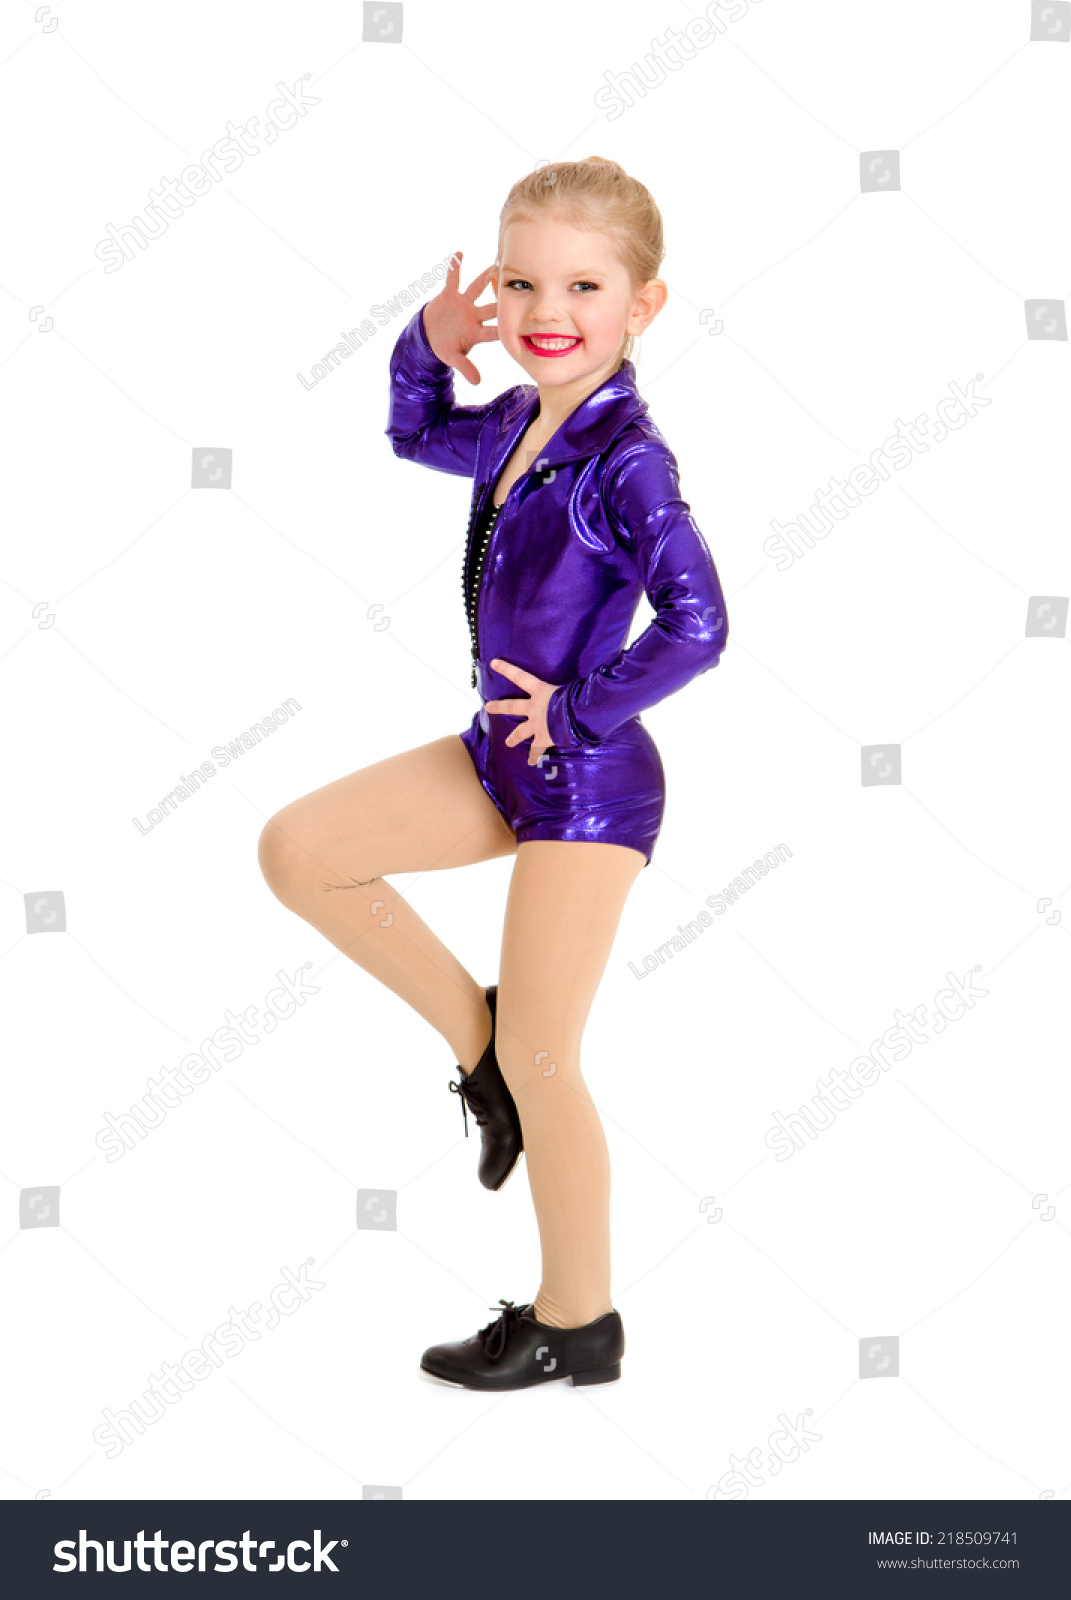 tap dance uniform